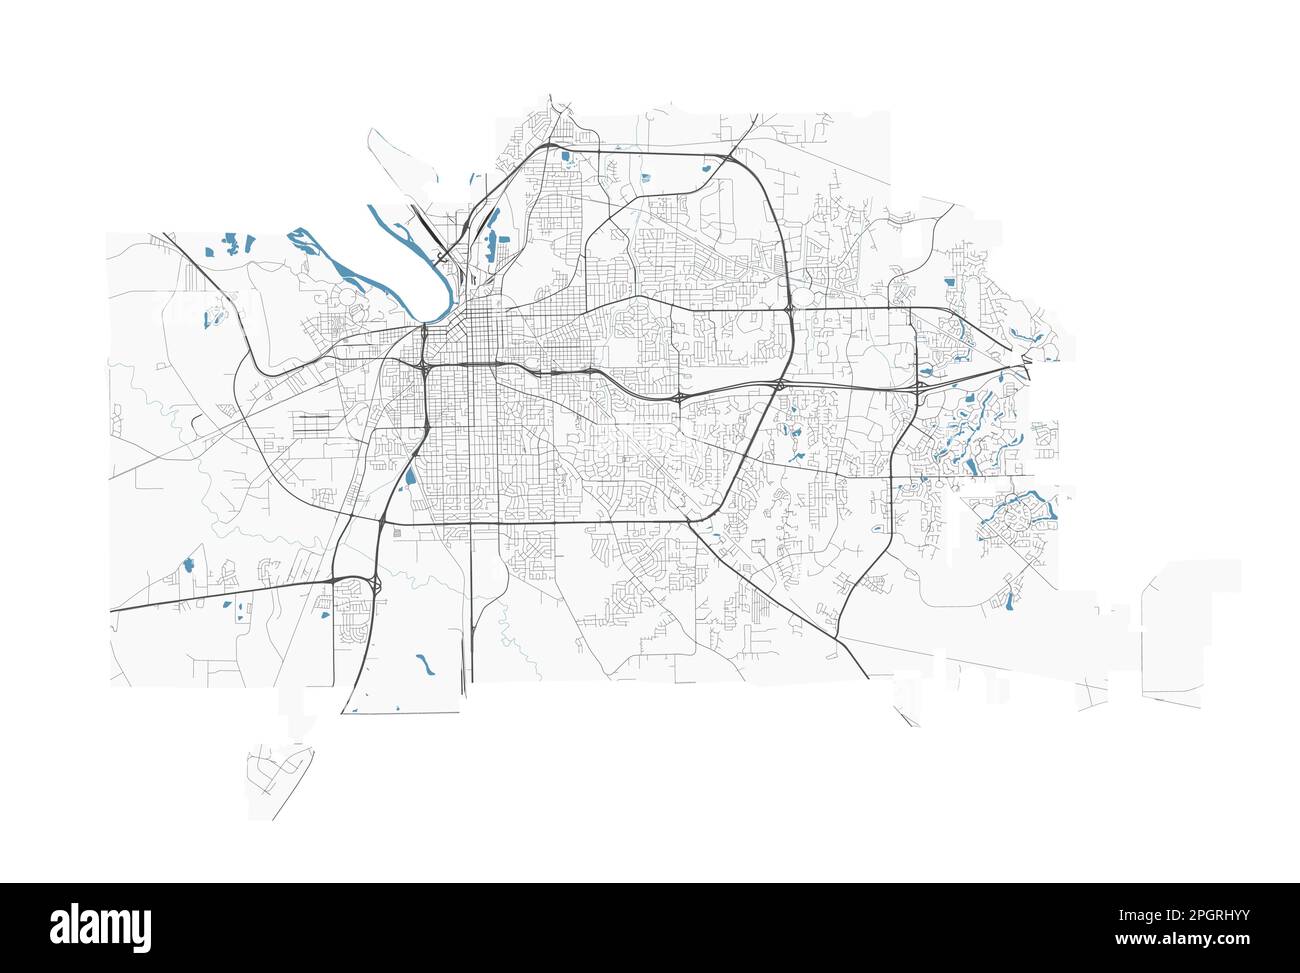 Montgomery, Alabama, carte. Carte détaillée de la zone administrative de Montgomery. Panorama urbain. Illustration vectorielle libre de droits. Carte routière avec haute Illustration de Vecteur